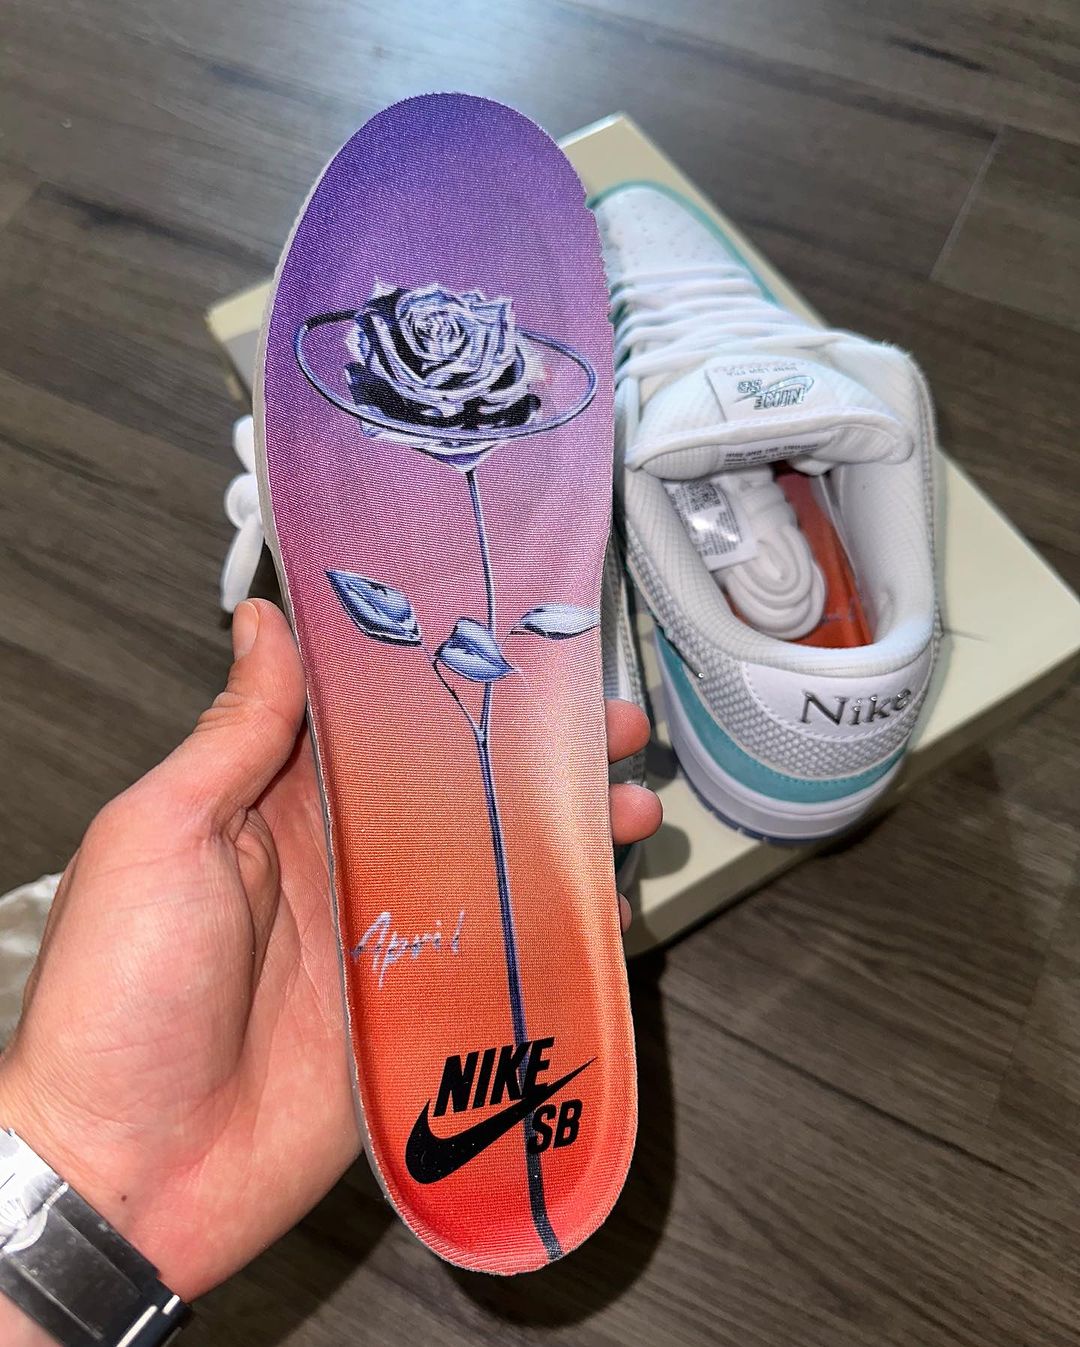 Confirmado no site da marca a colaboração April Skateboards x Nike SB